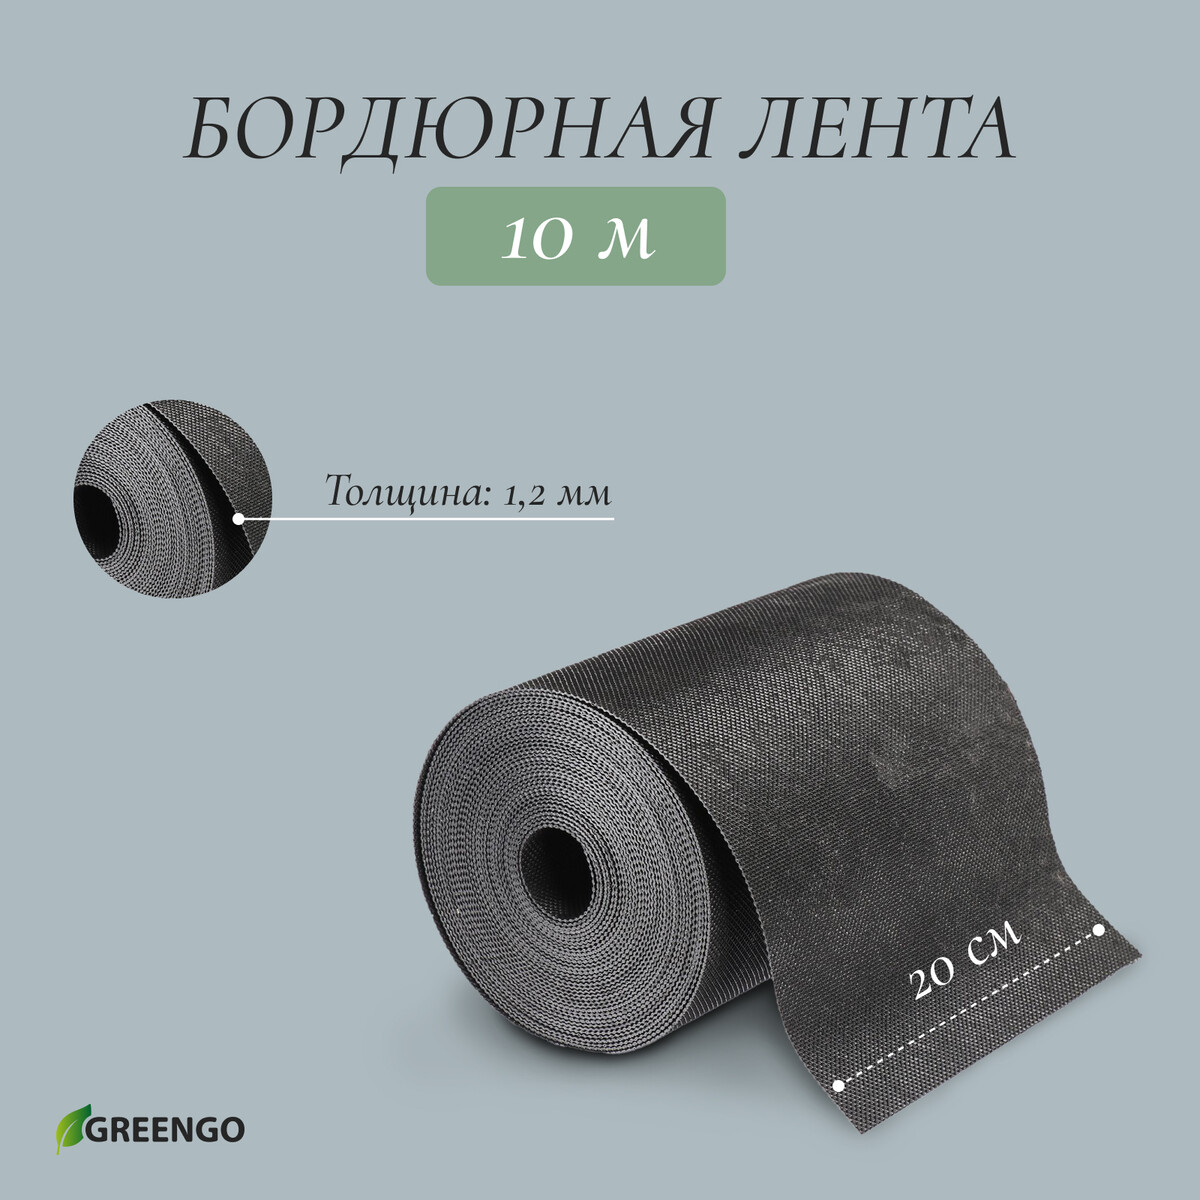 Лента бордюрная, 0.2 × 10 м, толщина 1.2 мм, пластиковая, черная, greengo